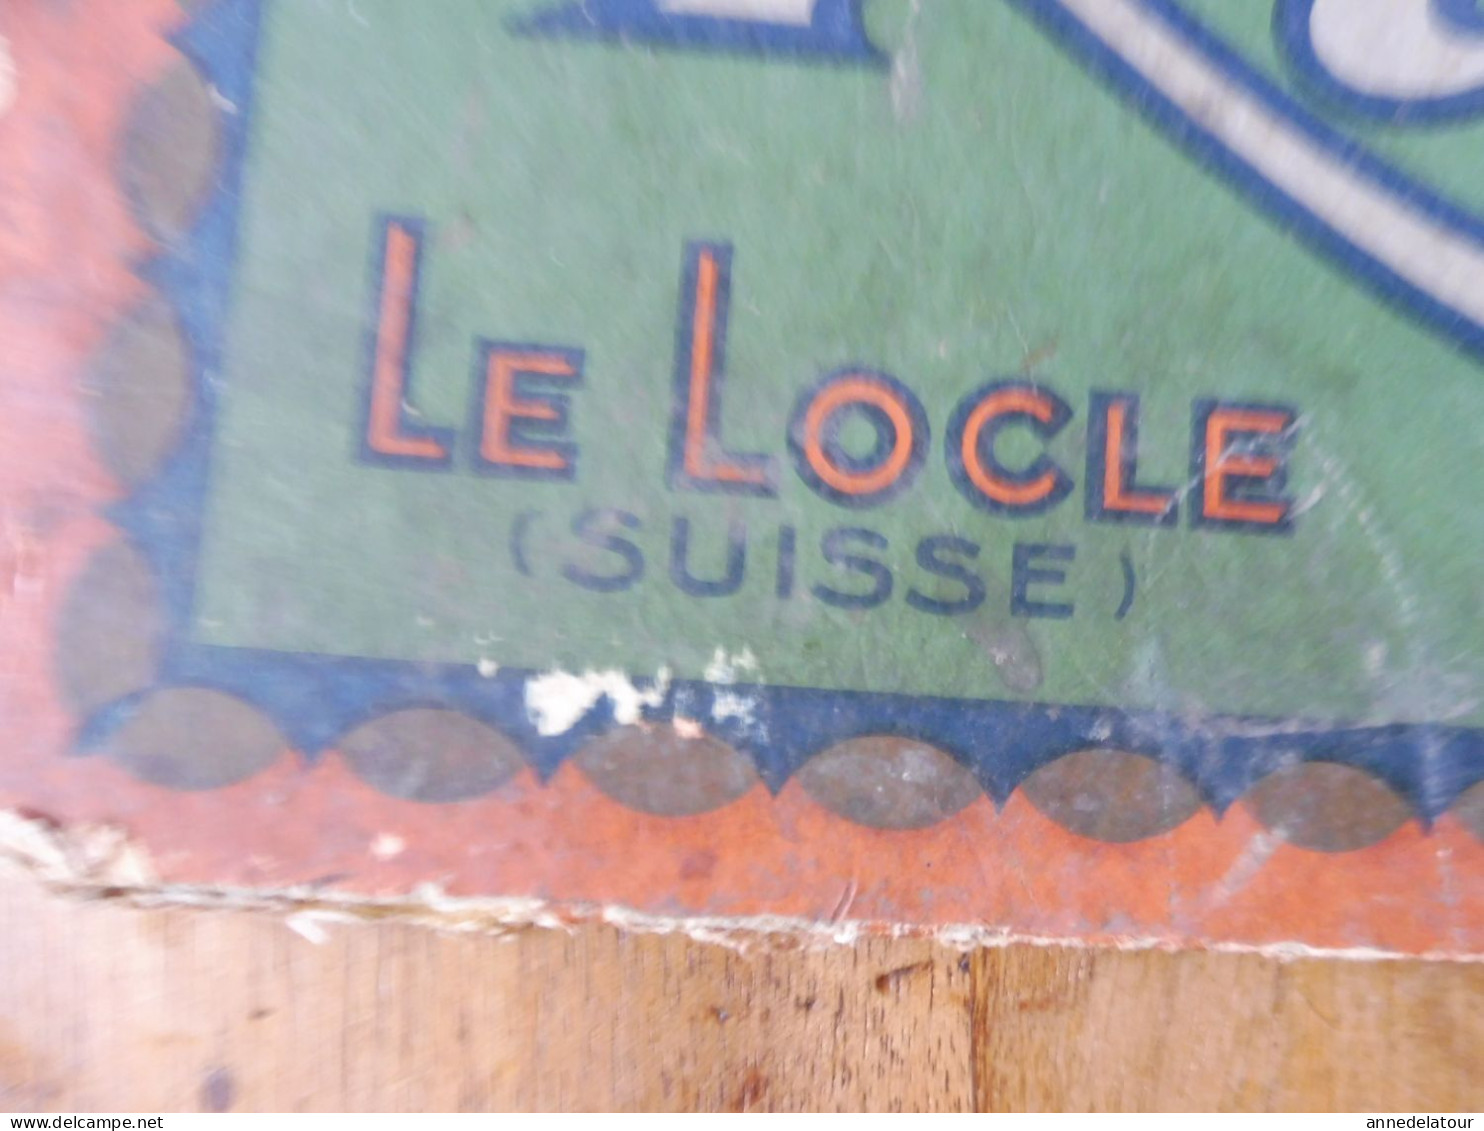 Plaque publicitaire recto-verso : BONBONS surfins  KLAUS  à Le Locle (Suisse) et Morteau (France)  dimension 32x 24cm